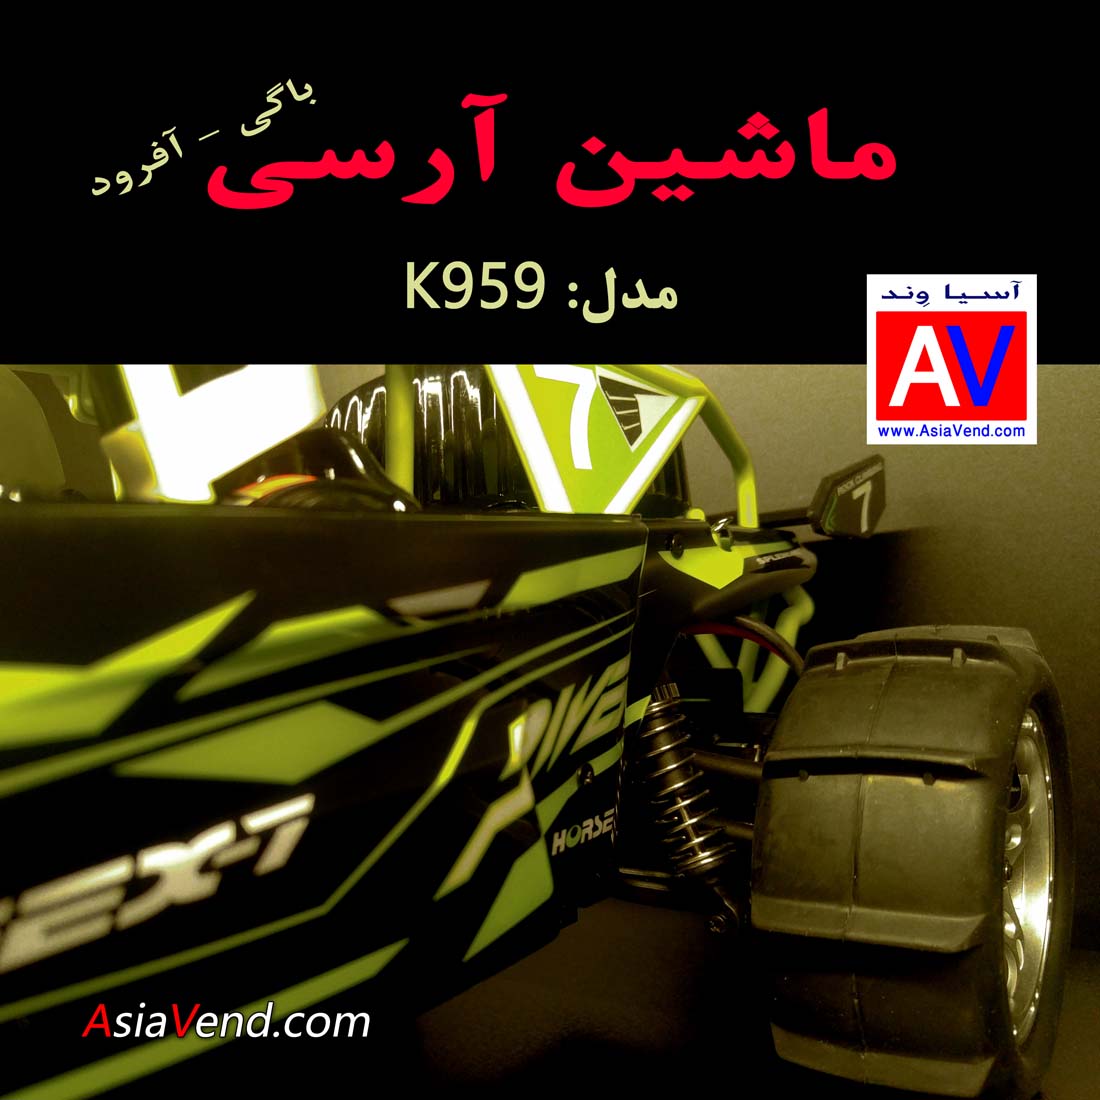 فروشگاه ماشین کنترلی حرفه ای شیراز ماشین رادیو کنترلی K959